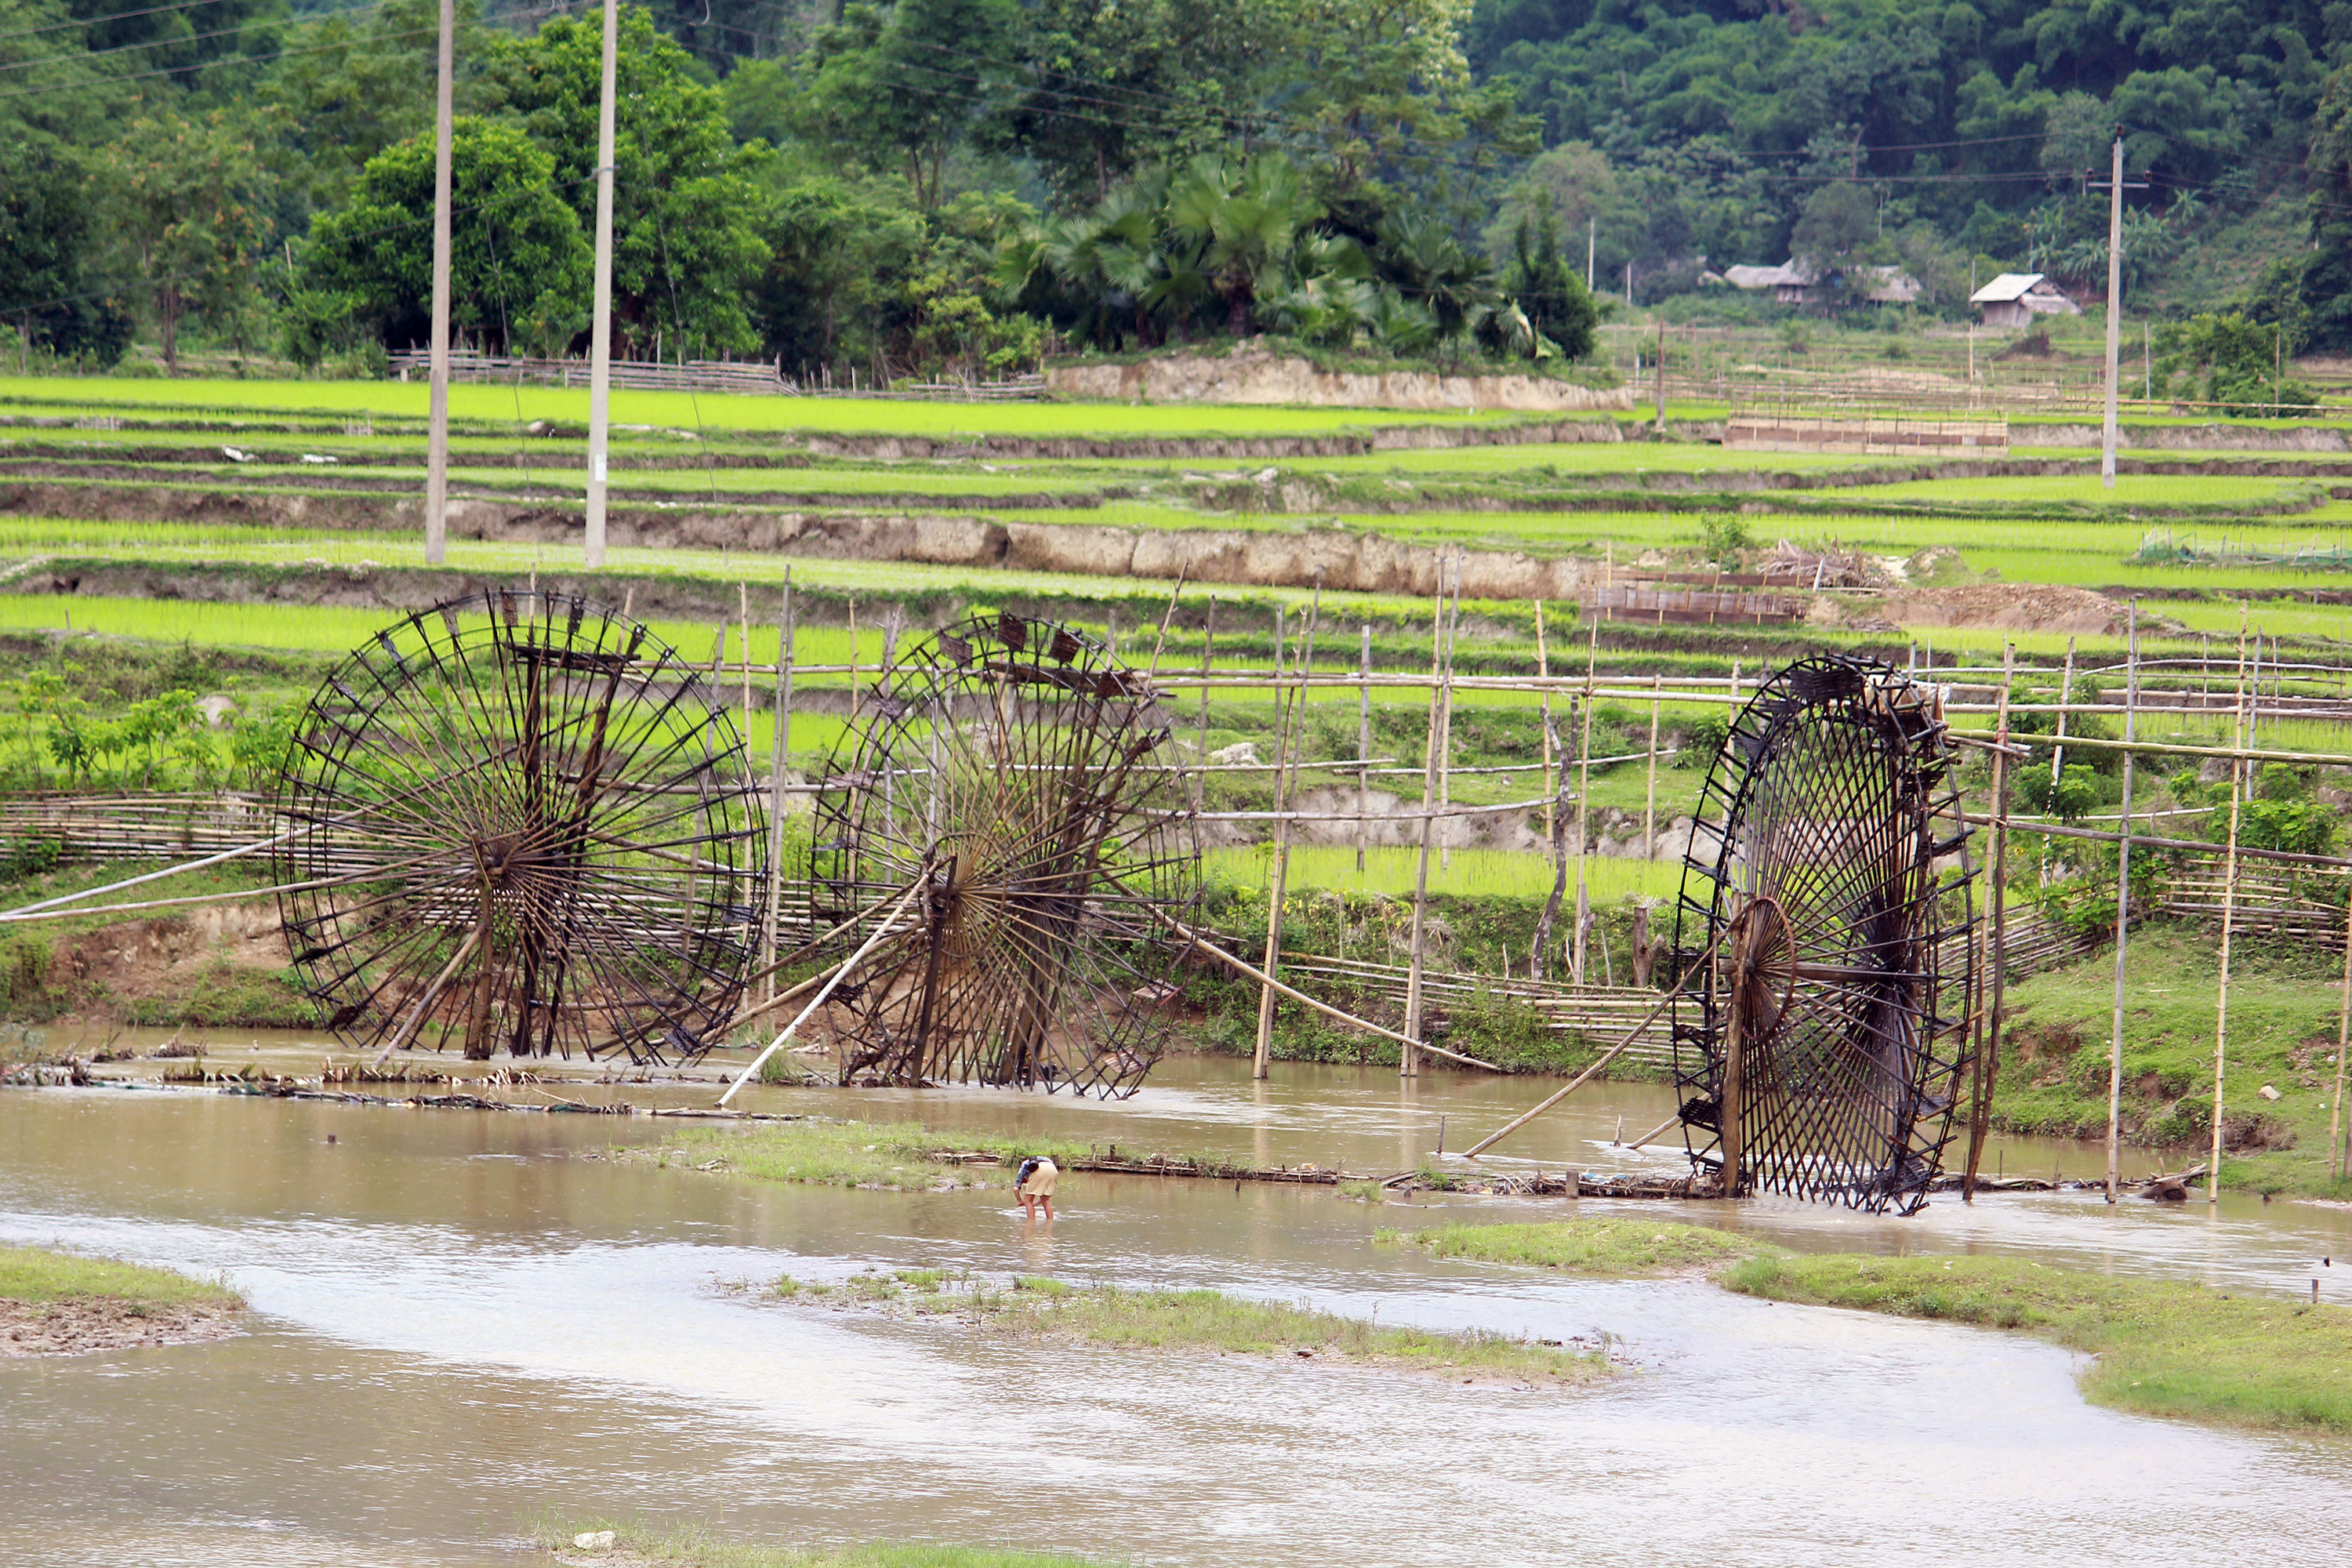 Trên một số cánh đồng khác, những guồng nước cũng đang phát huy hết tác dụng đưa nước vào ruộng để phục vụ sản xuất. Ảnh: Đào Thọ